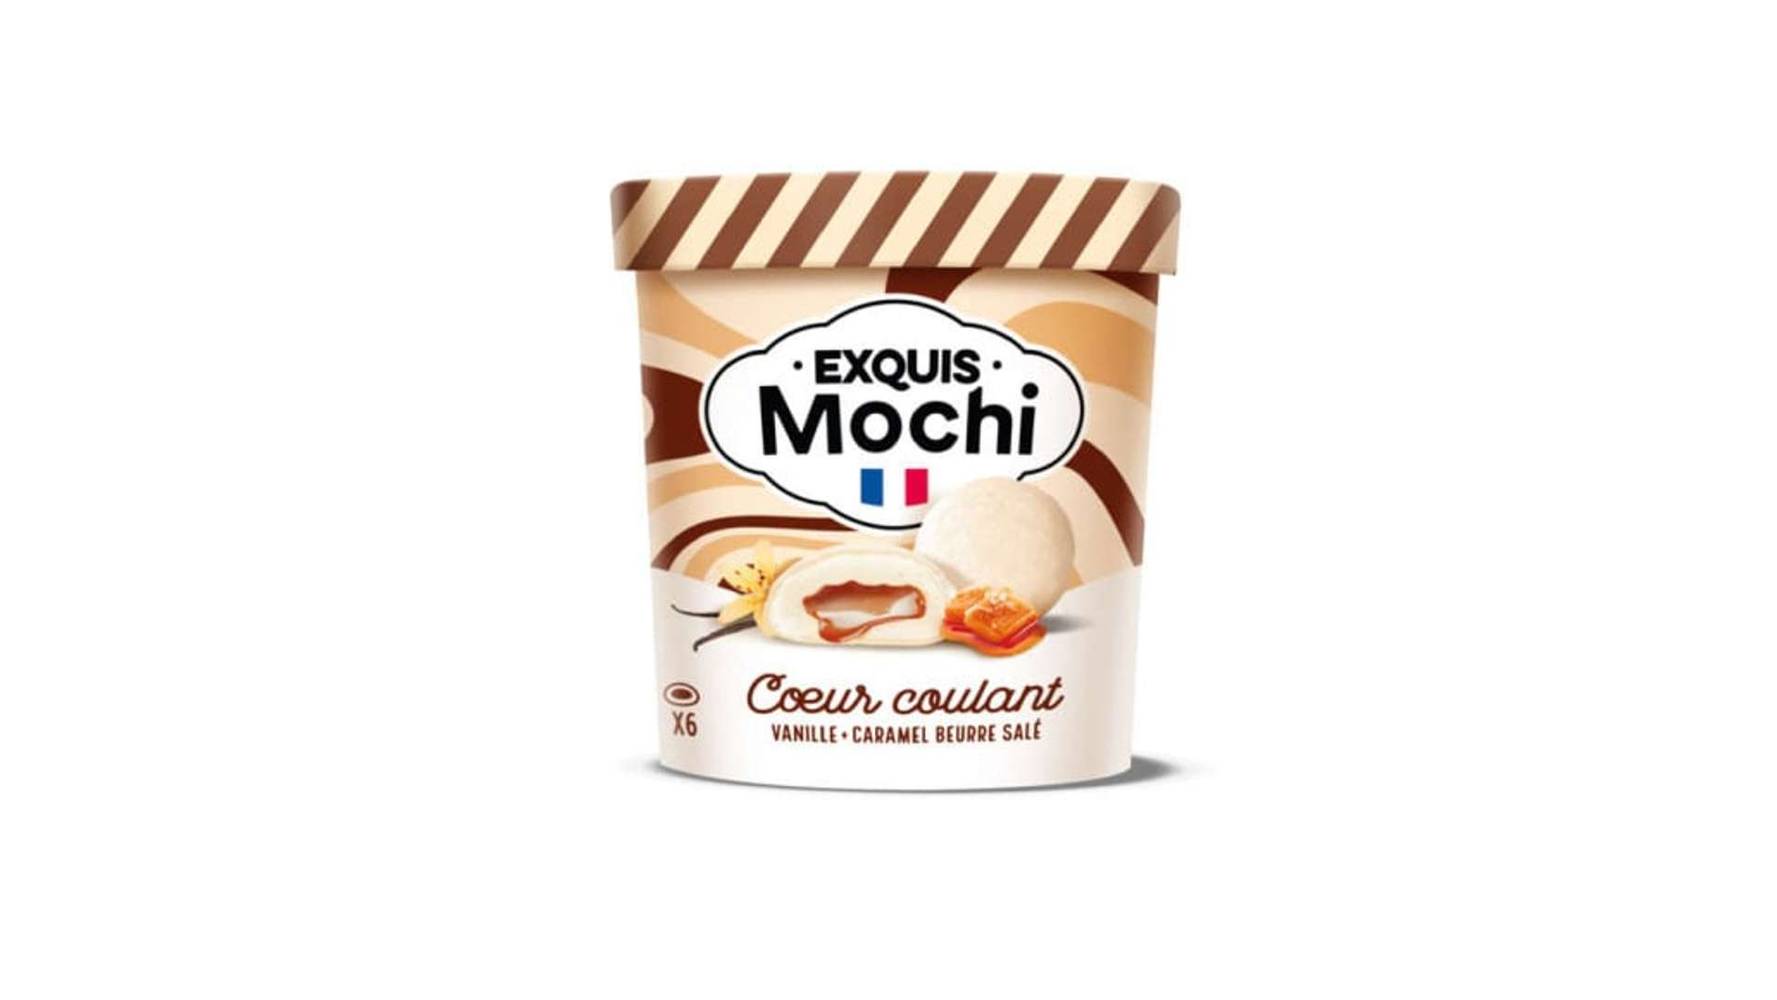 Exquis Mochi - Mochis cœur coulant (vanille - caramel beurre salé)